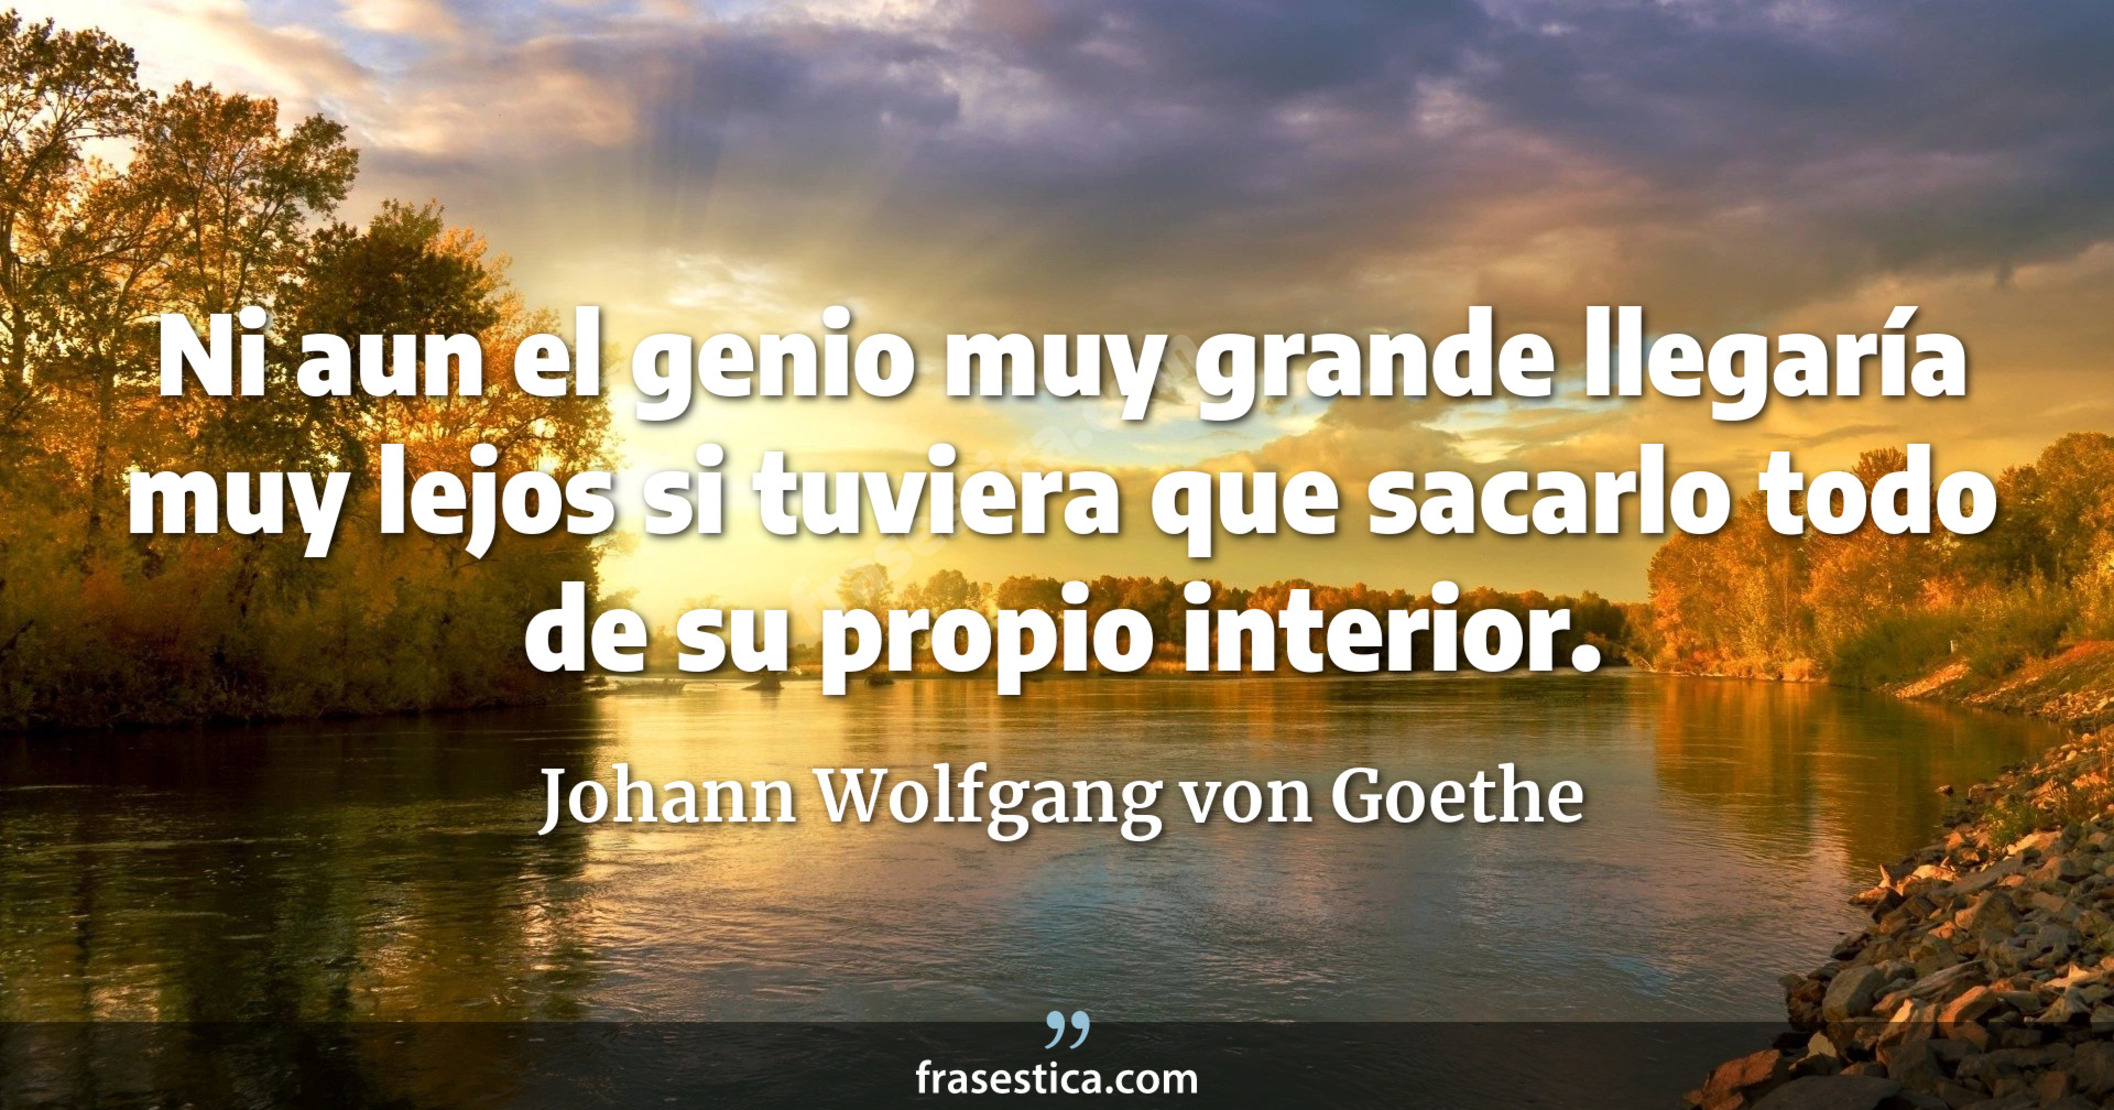 Ni aun el genio muy grande llegaría muy lejos si tuviera que sacarlo todo de su propio interior. - Johann Wolfgang von Goethe